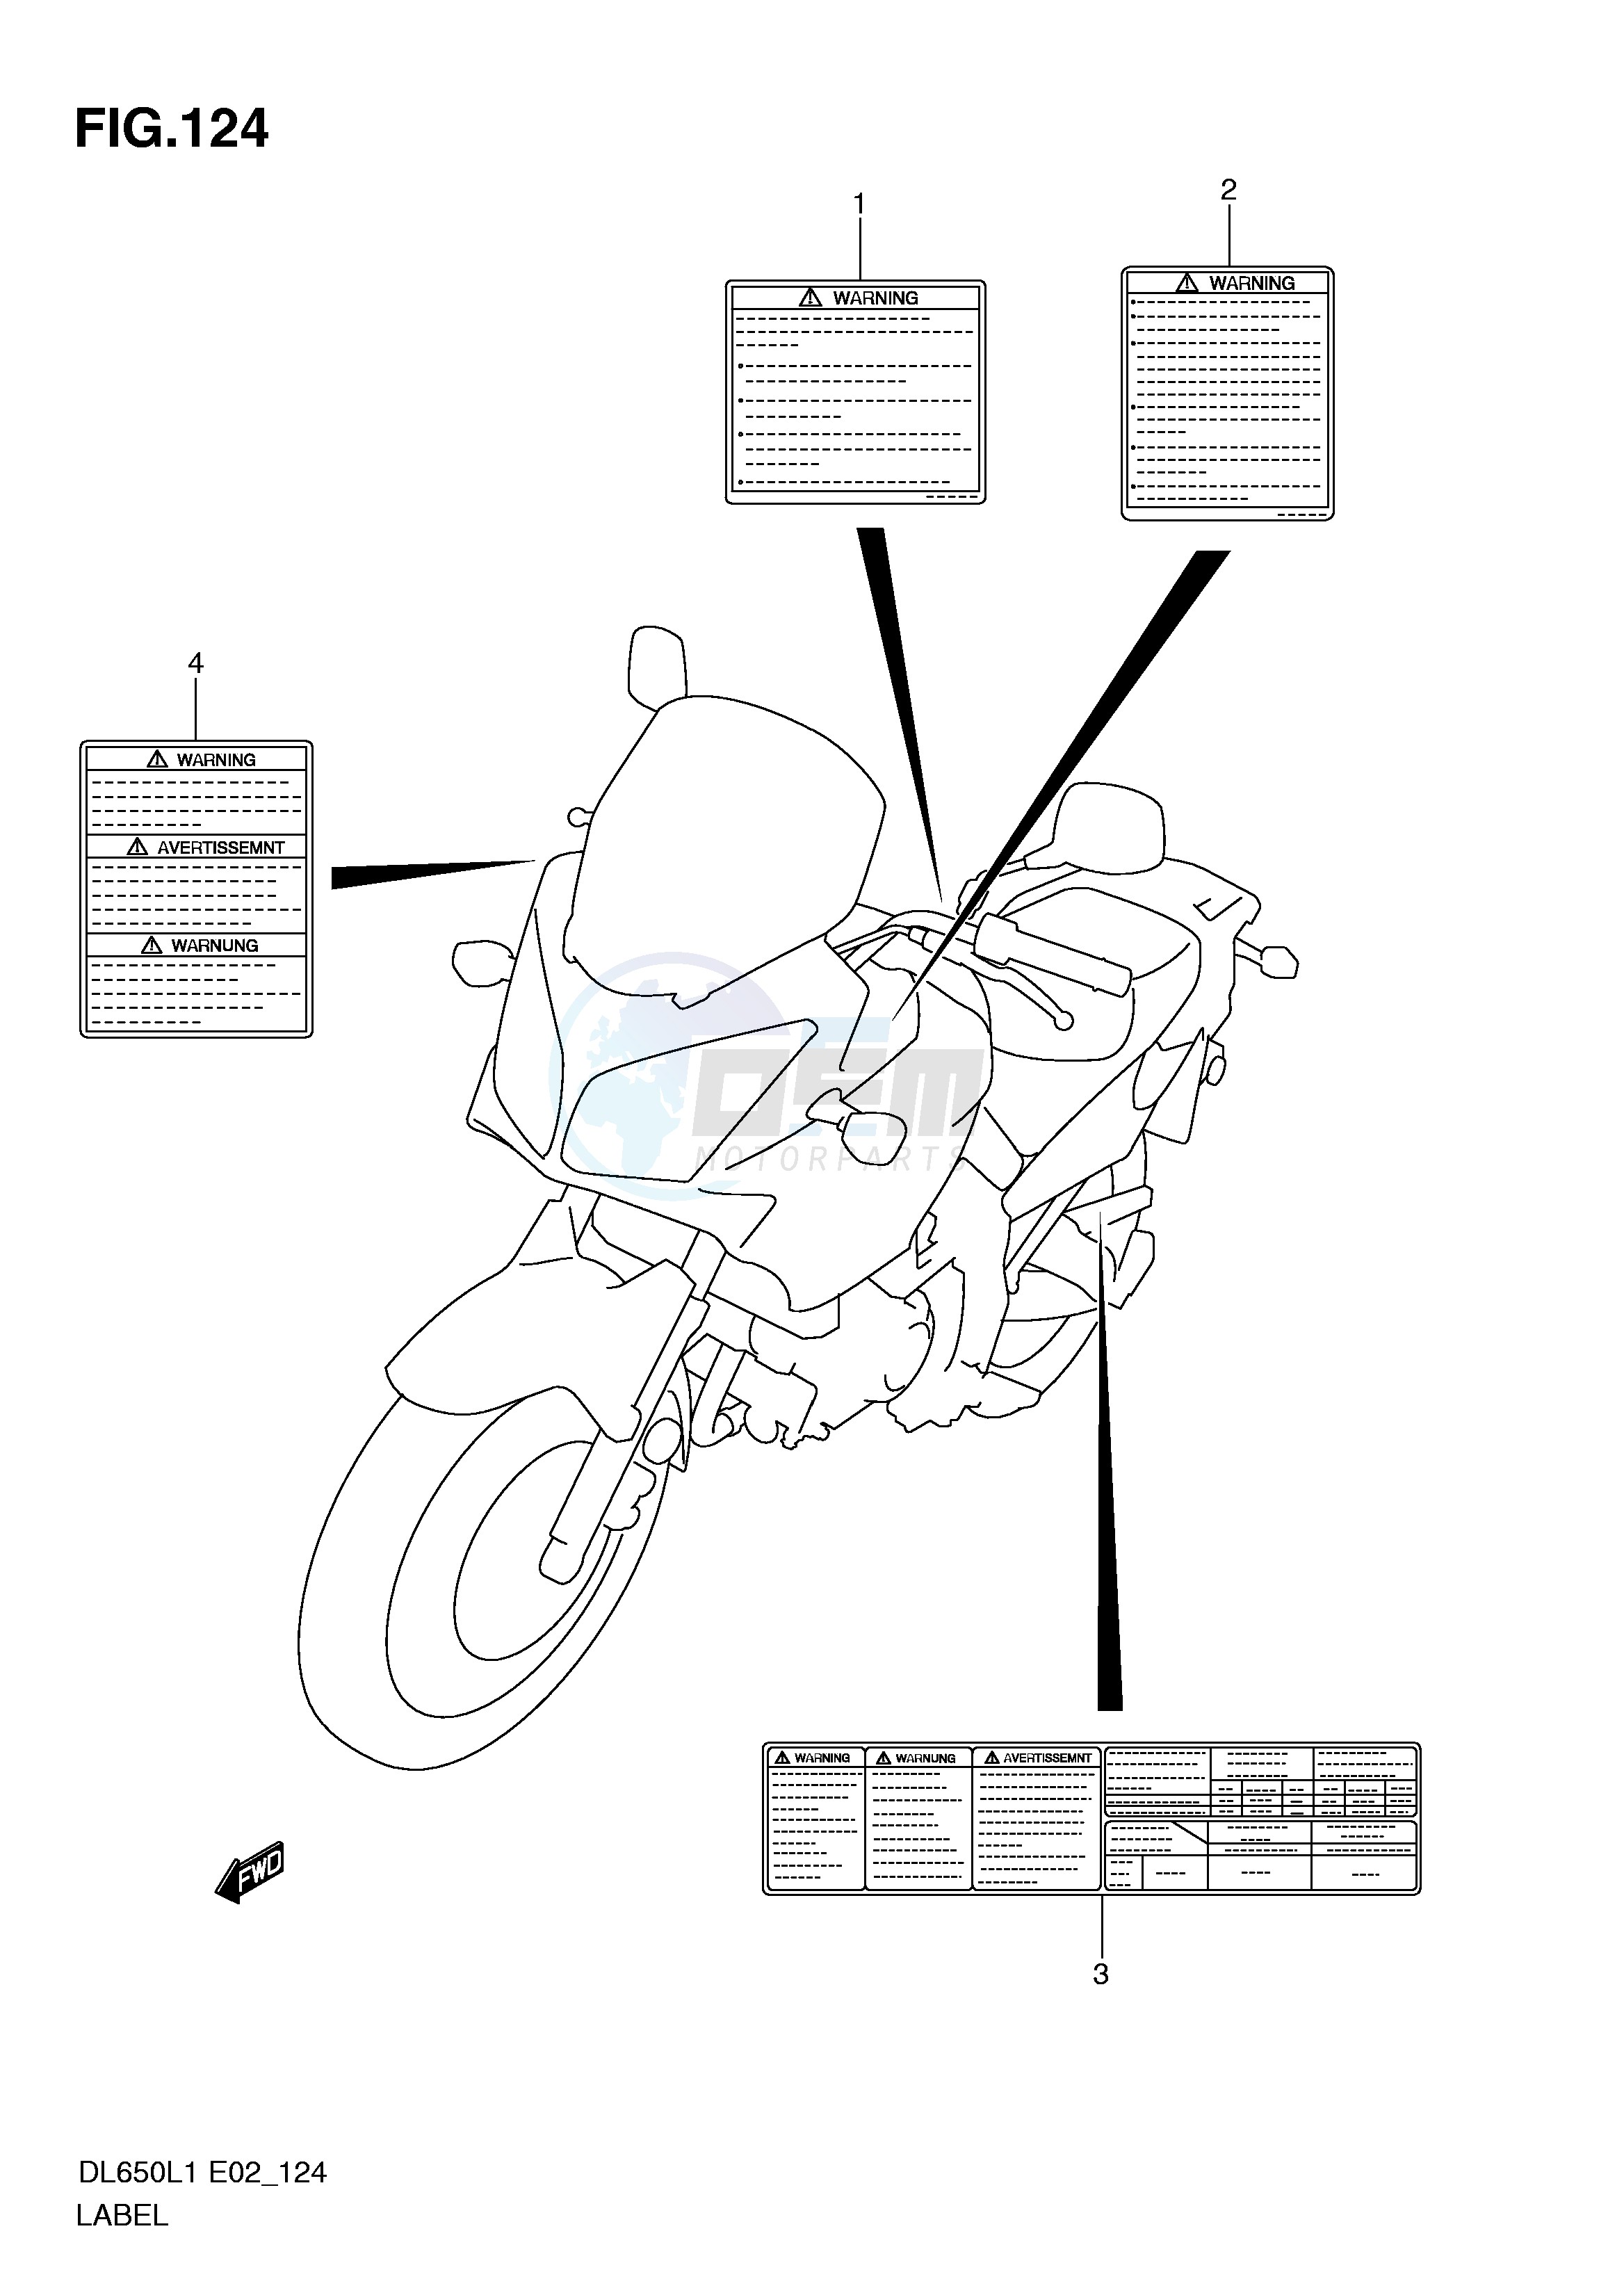 LABEL (DL650AL1 E2) blueprint